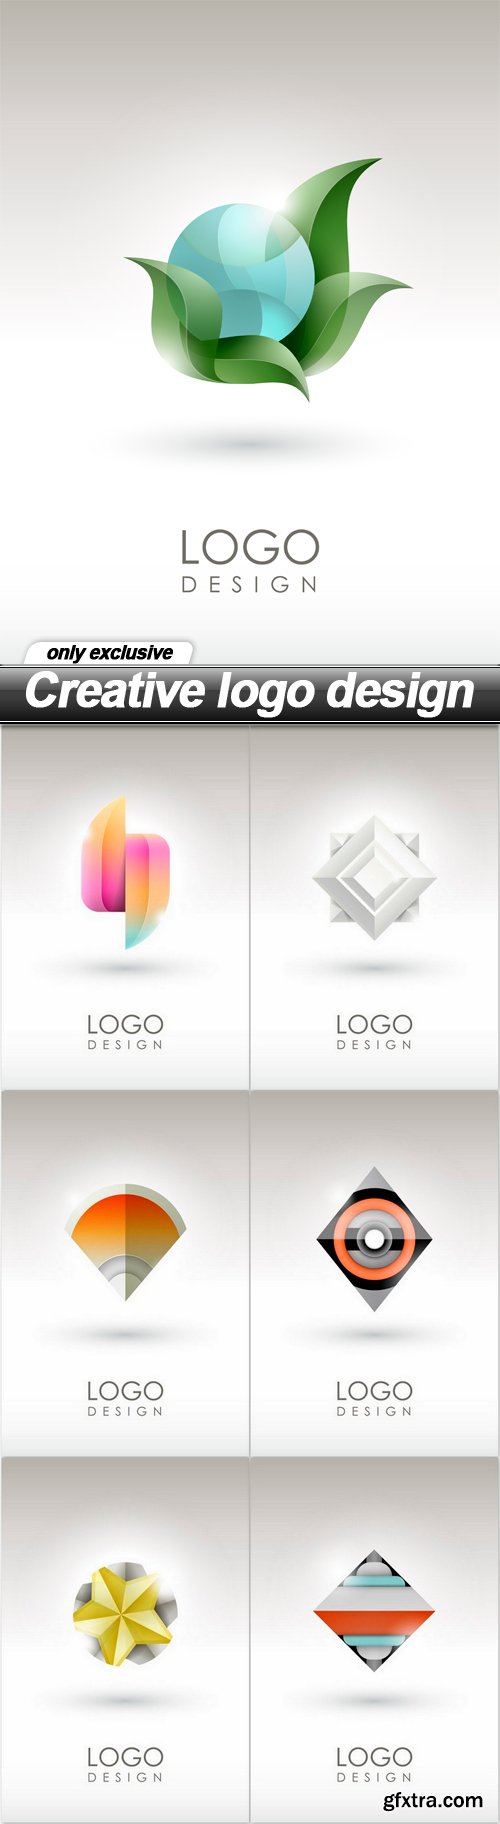 Creative logo design - 7 EPS